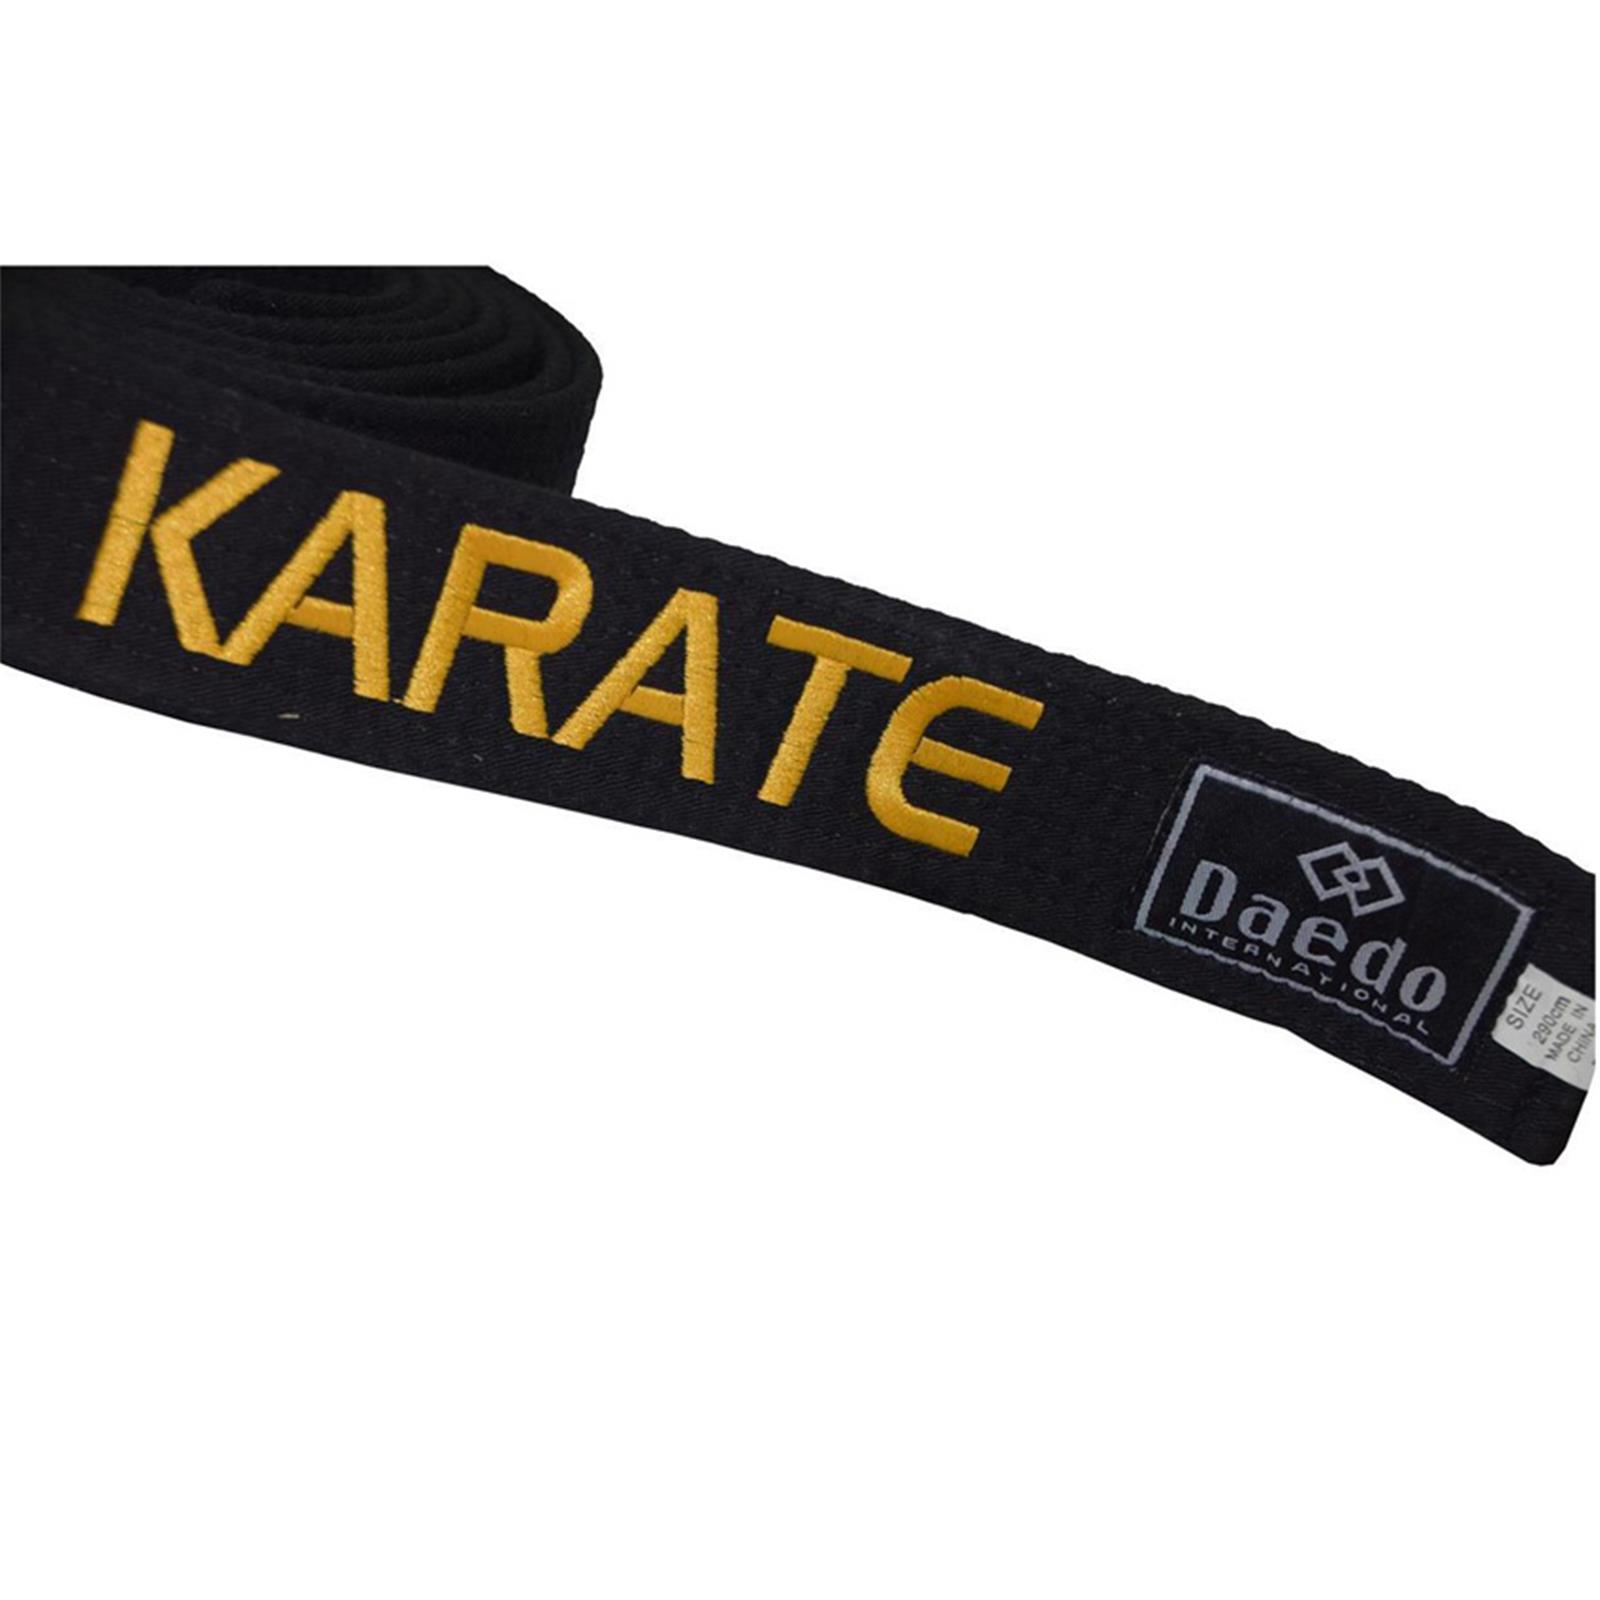 Dae Do Cintura Nera Karate ricamata Oro personalizzata (ALTEZZA 4,5 CM - Tag. 6°  CM 305)